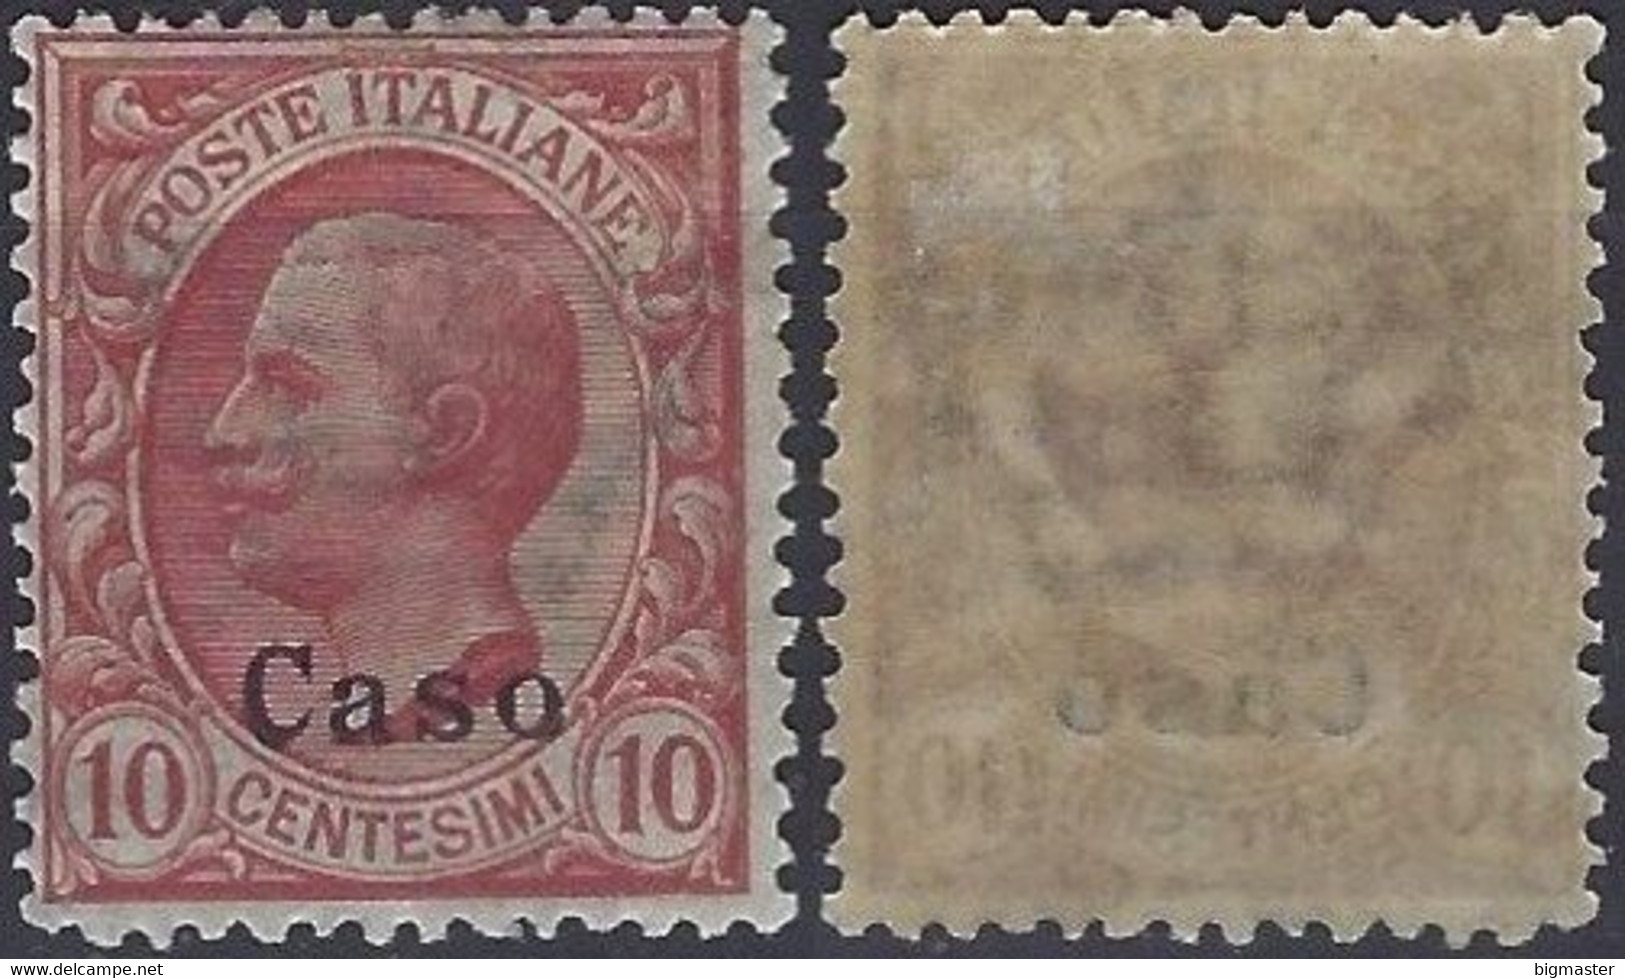 1912 Regno D'Italia IG 1912 IT-EG CS3 10c  Italy Stamps Overprinted 'Caso' - Egeo (Caso)